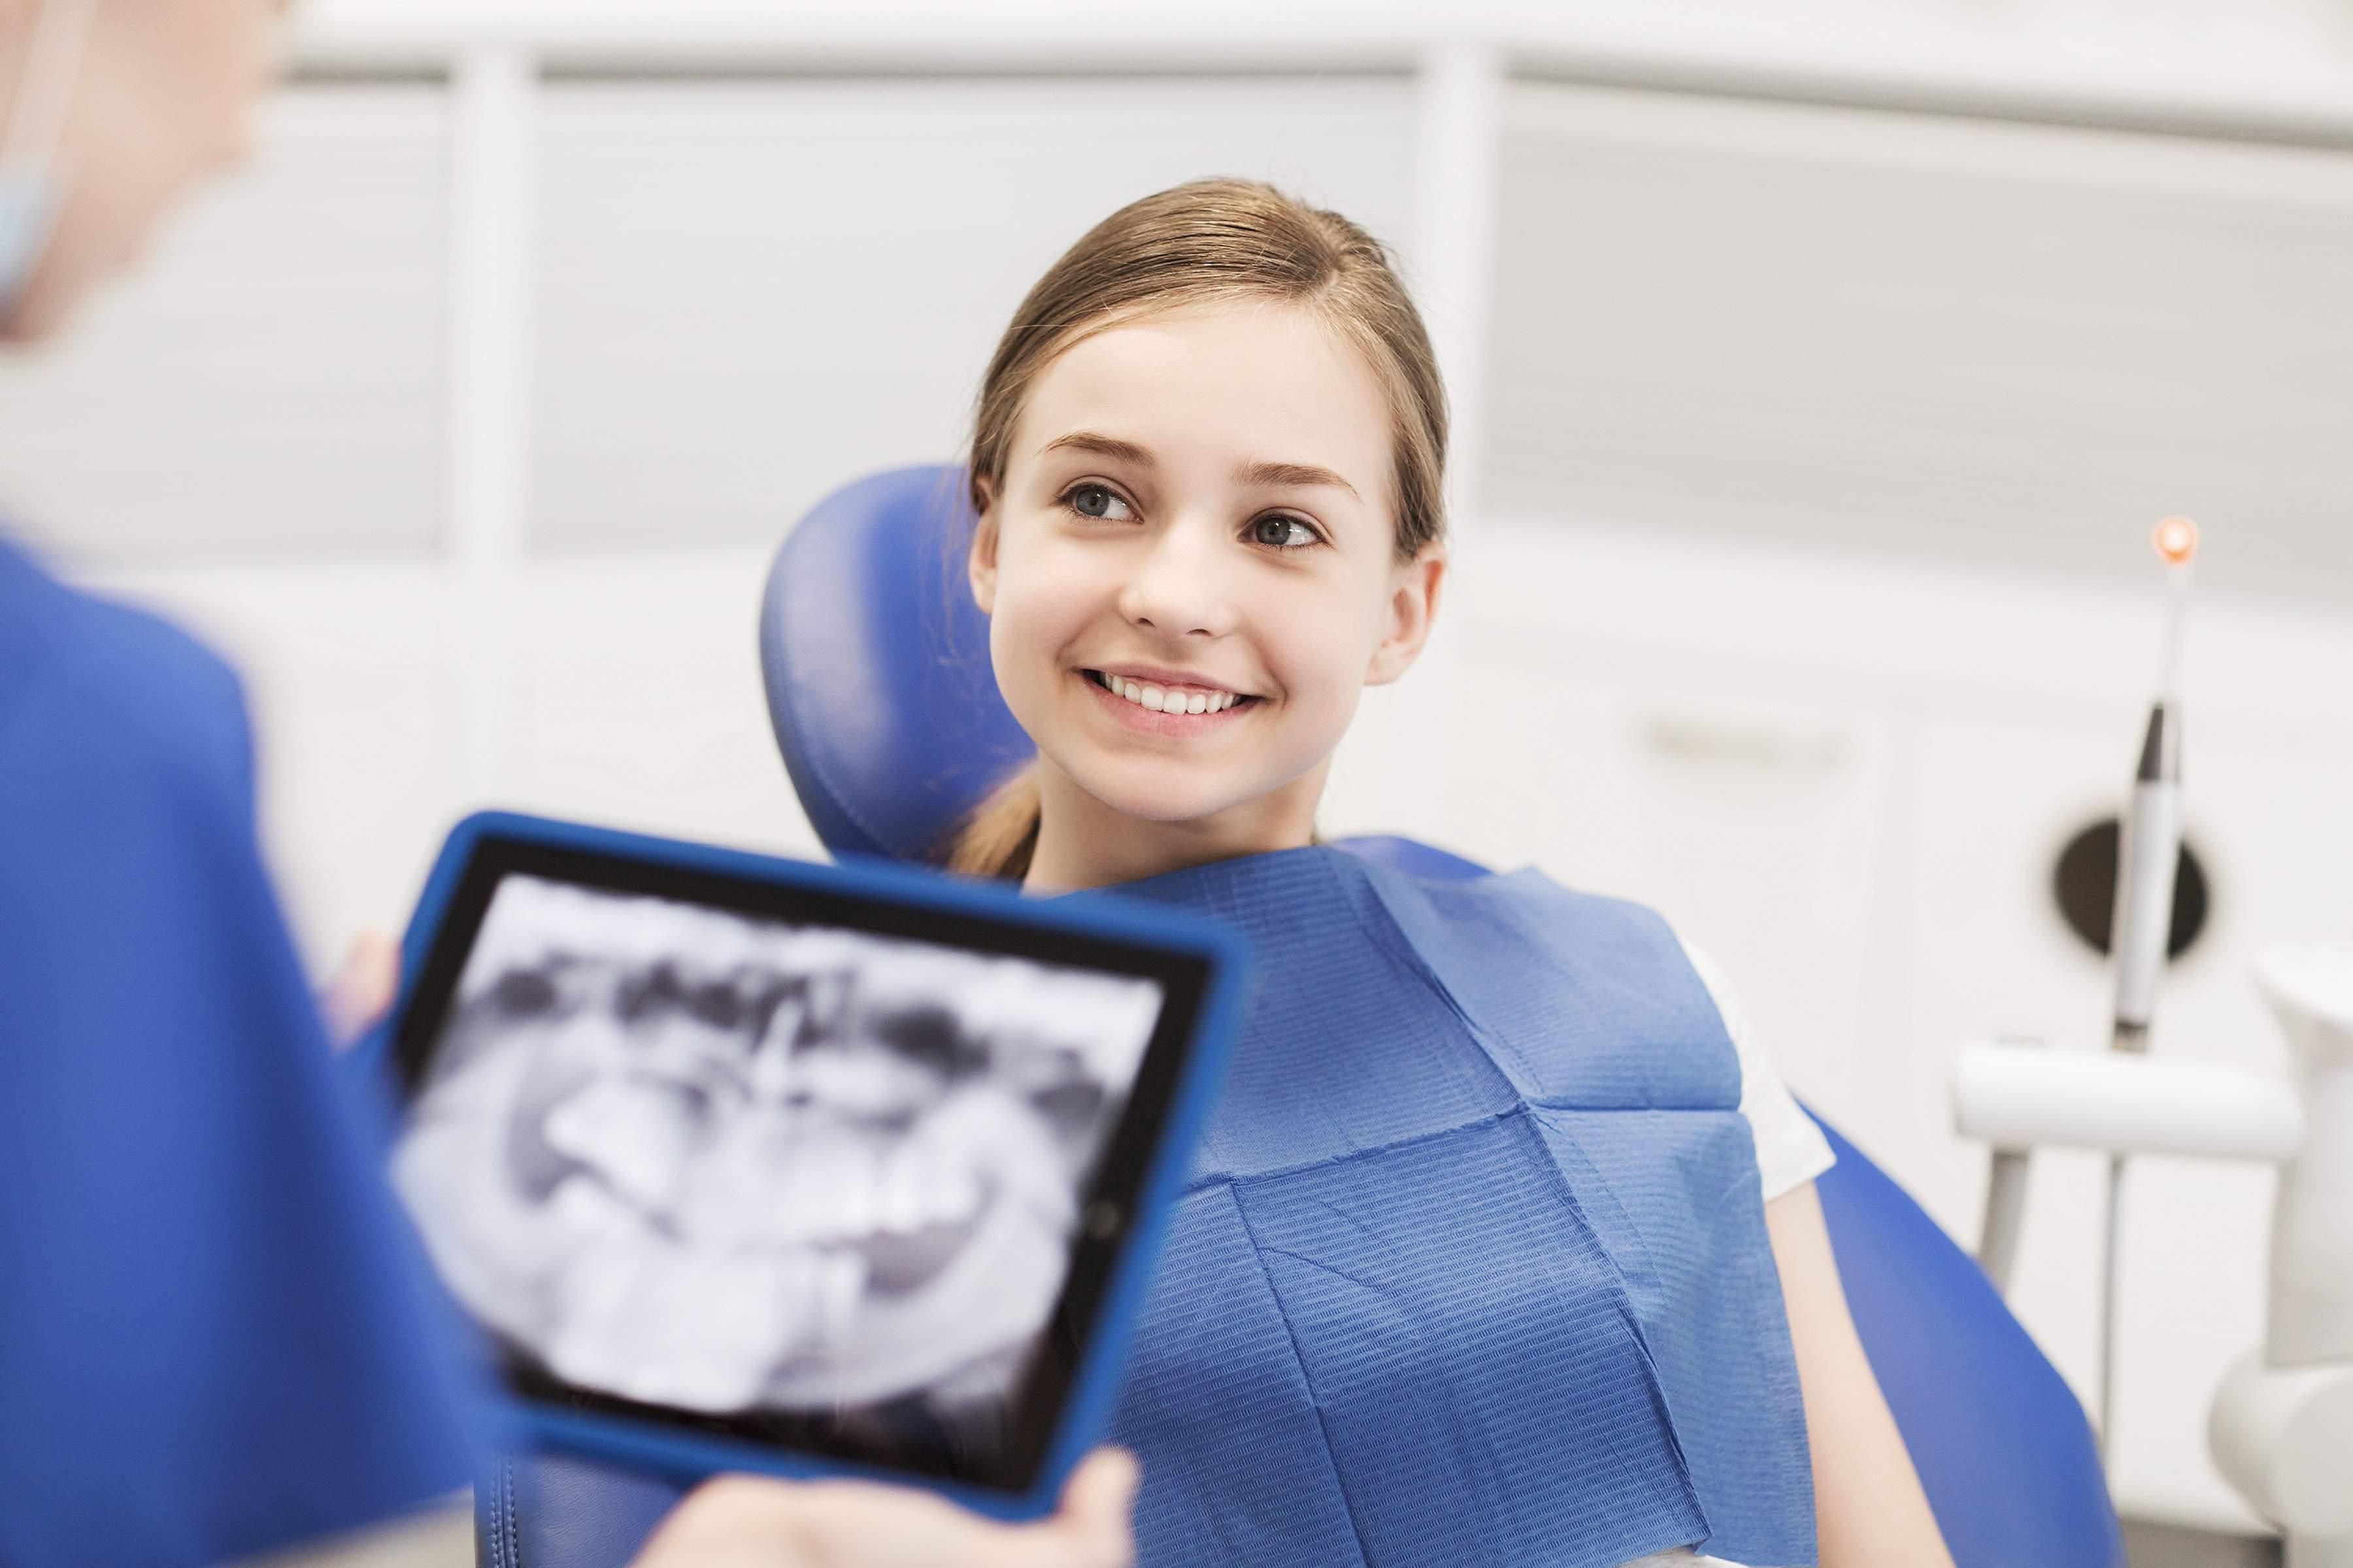 Rizici i koristi po pacijenta: Zub se snima samo ako za to postoji indikacija